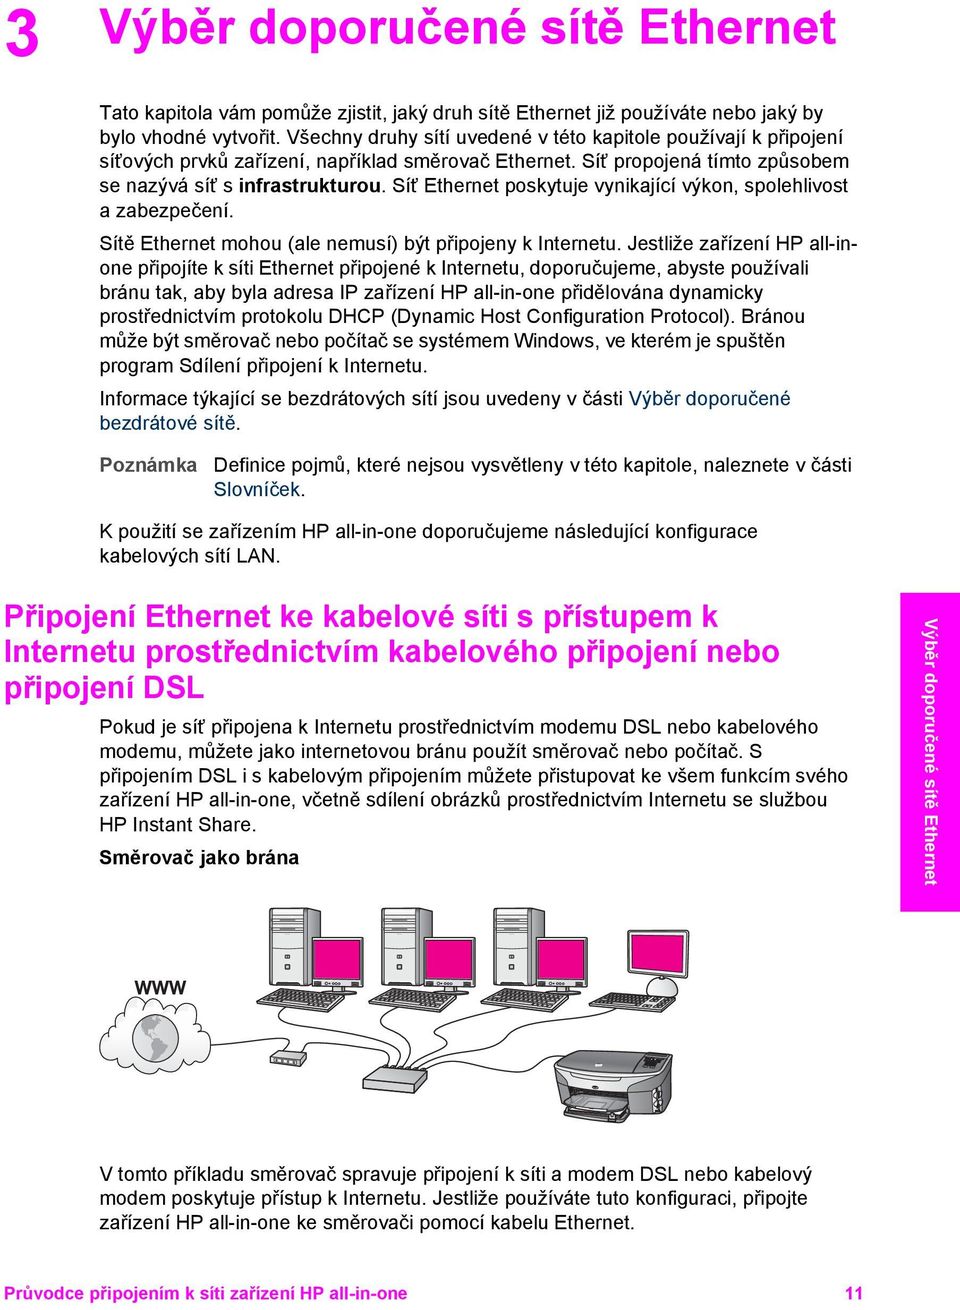 Síť Ethernet poskytuje vynikající výkon, spolehlivost a zabezpečení. Sítě Ethernet mohou (ale nemusí) být připojeny k Internetu.